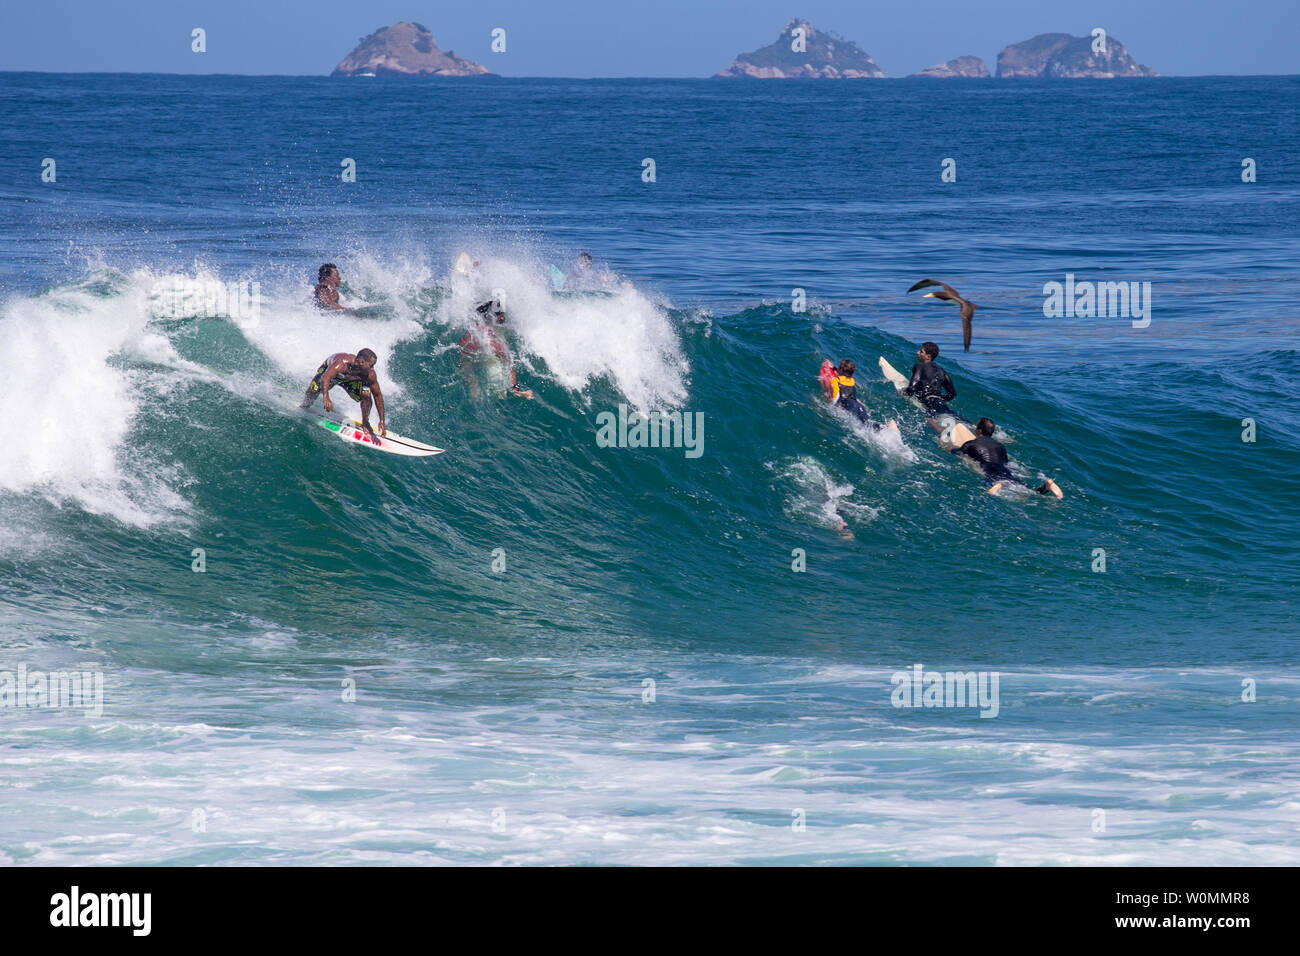 Rio de Janeiroi, Brazil - August 13, 2016: amateur surfers having fun on a swell day at arpoador beach, Rio de Janeiro. Stock Photo